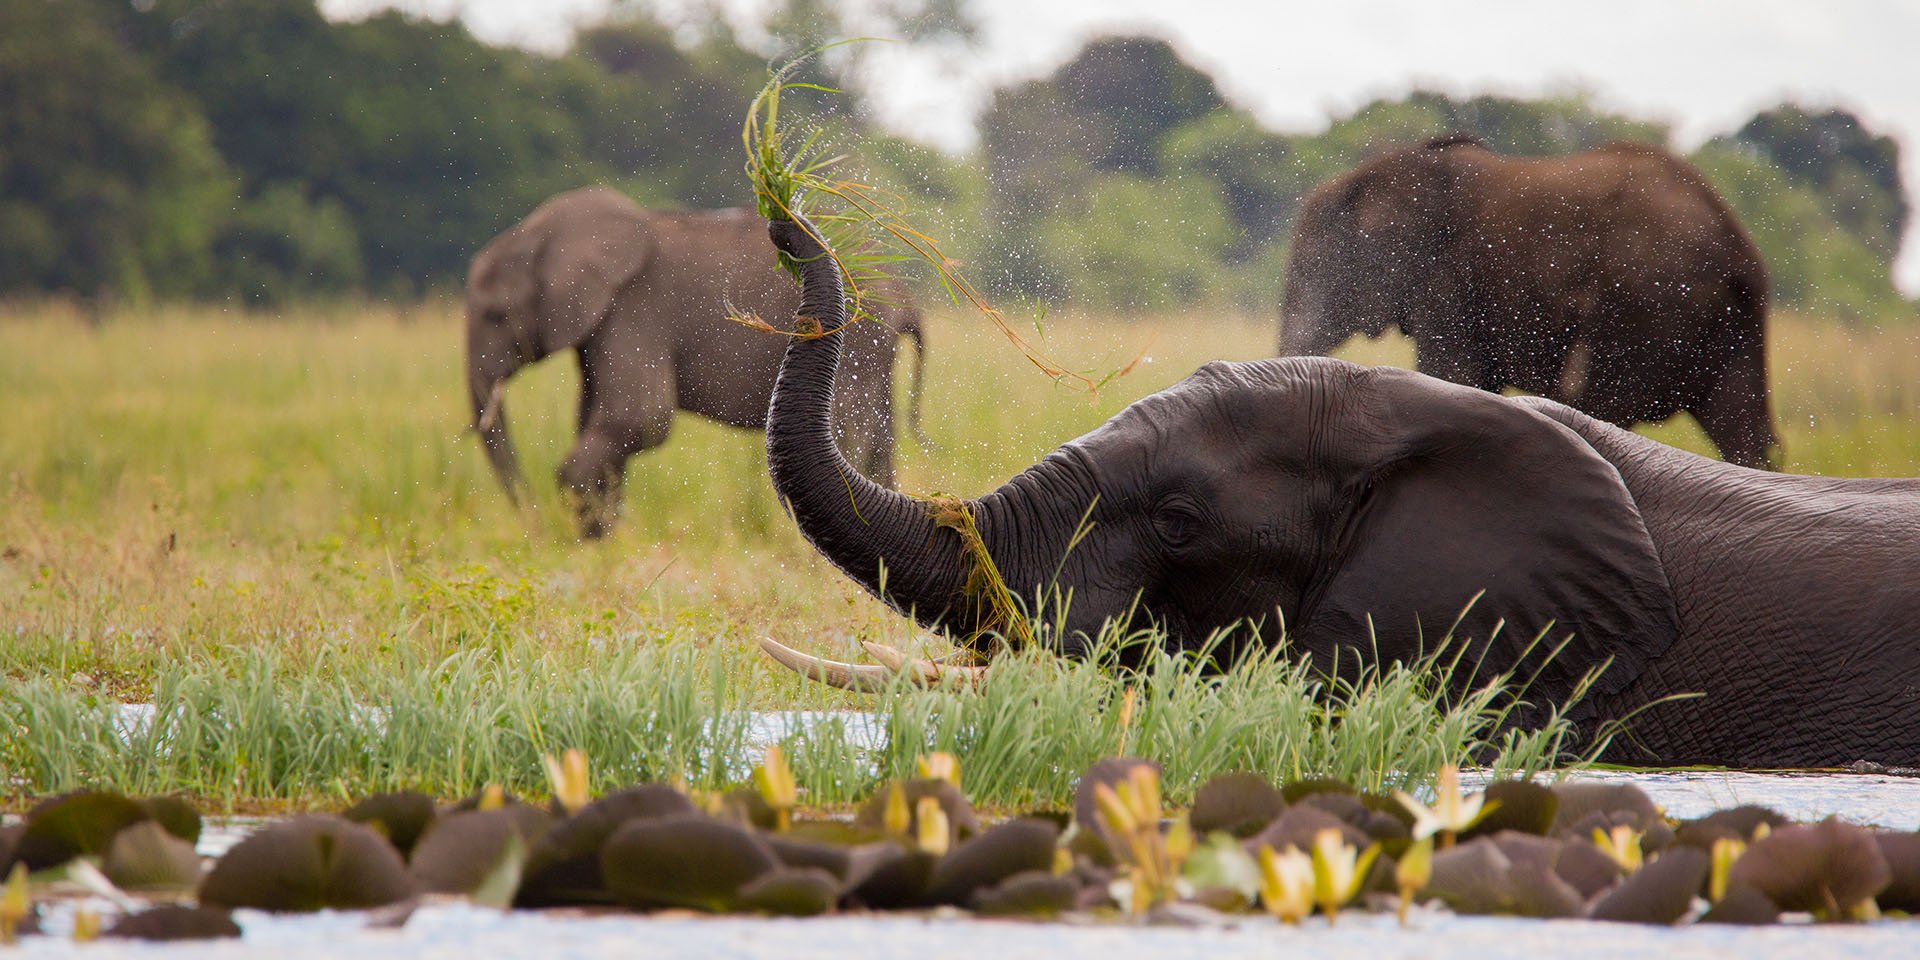 Elephant in water, Zambezi Region, Namibia